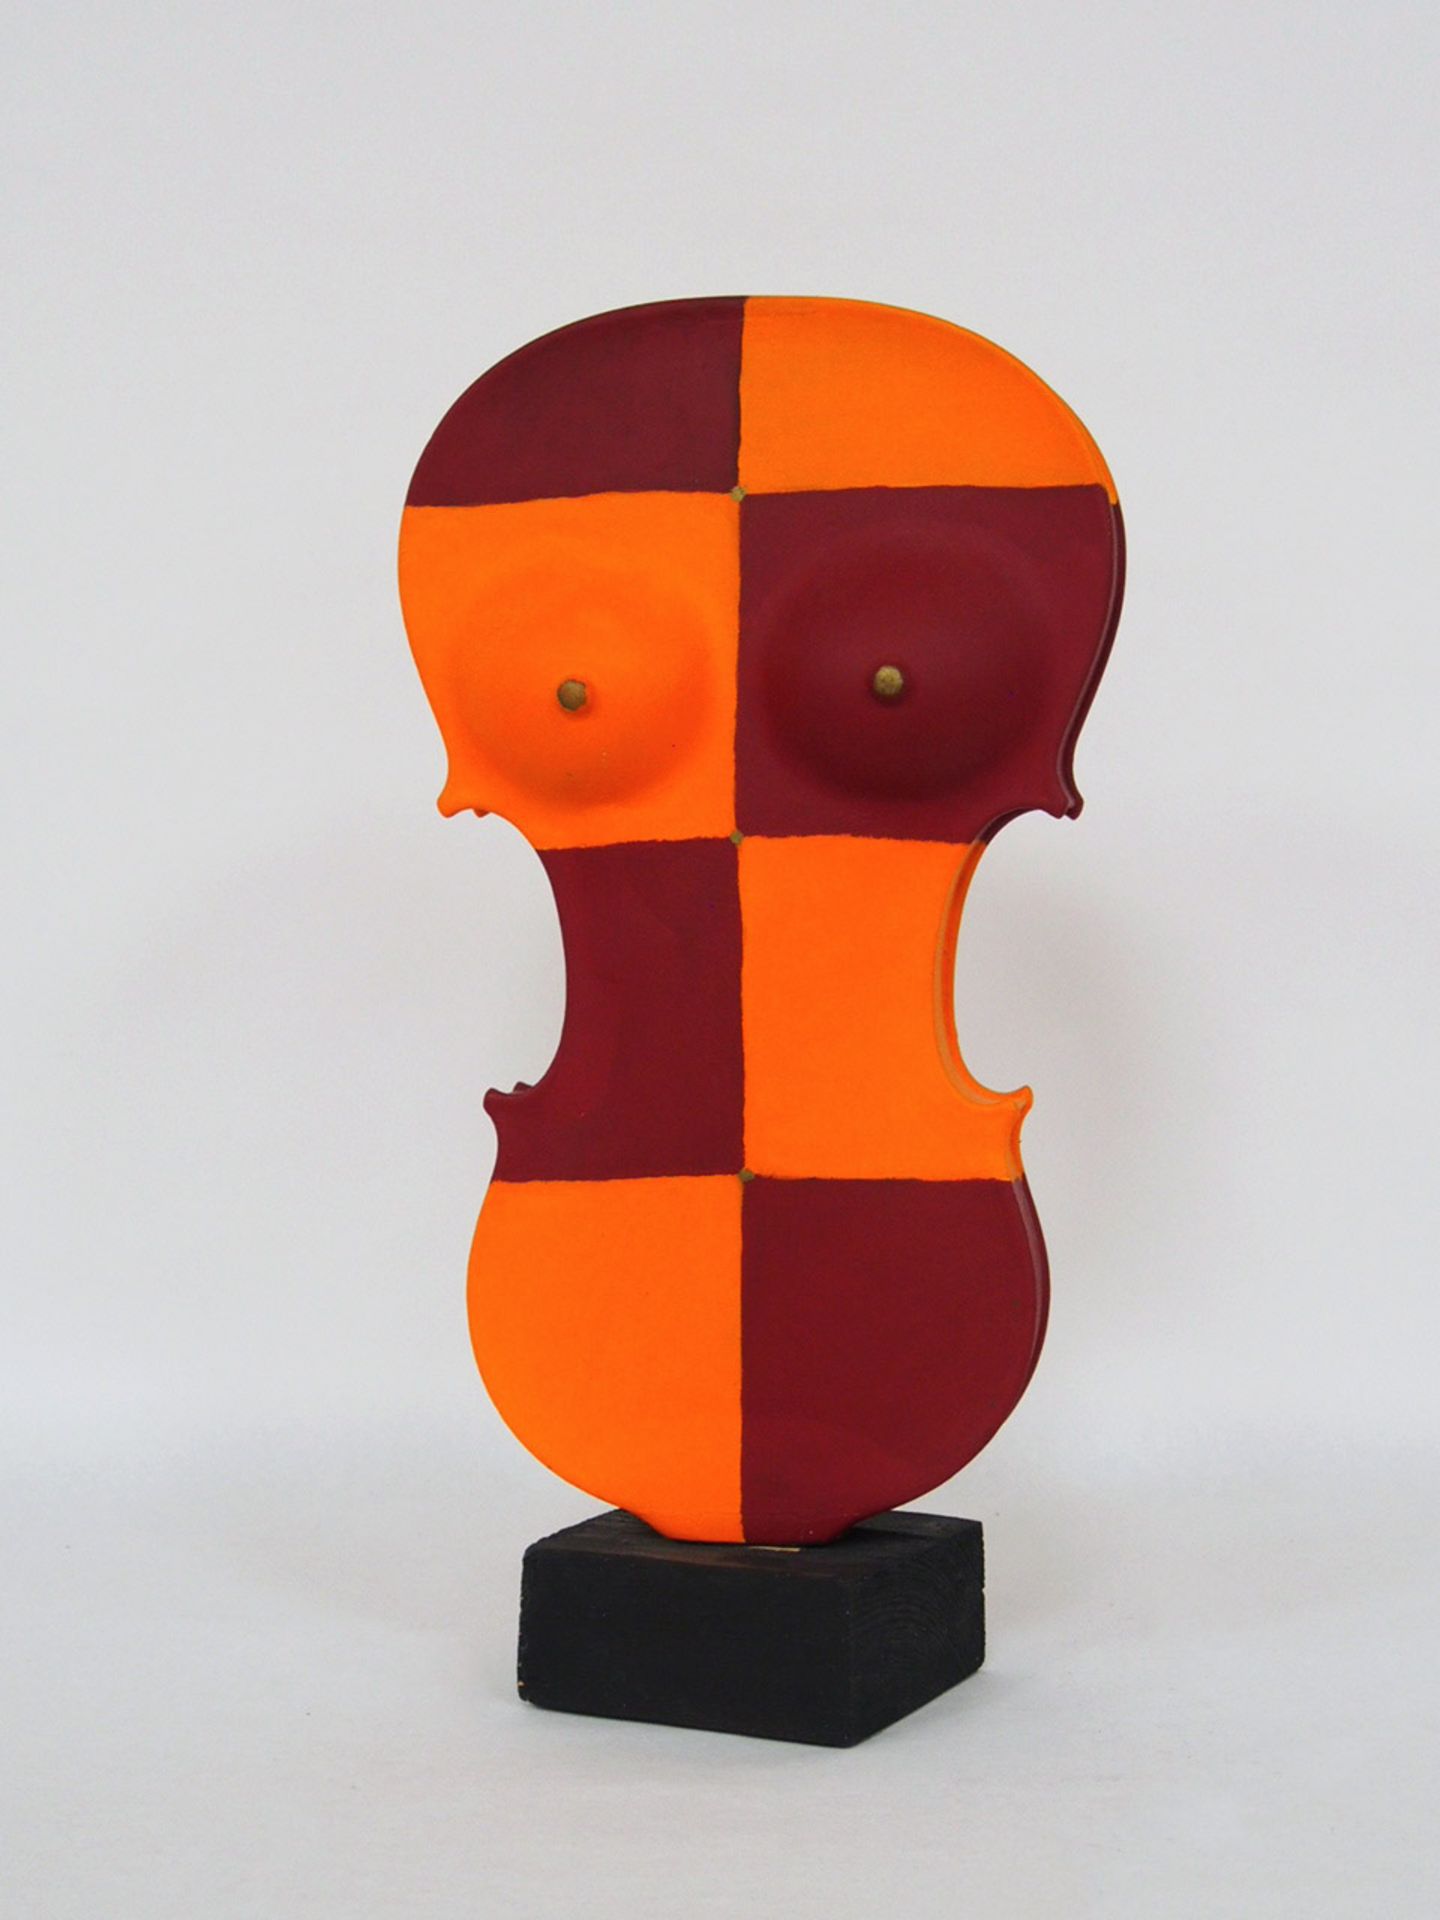 HAMM, Falko1939-2015Verzauberte GeigeSkulptur, Geigenkorpus, verschiedene Werkstoffe, Farbe,